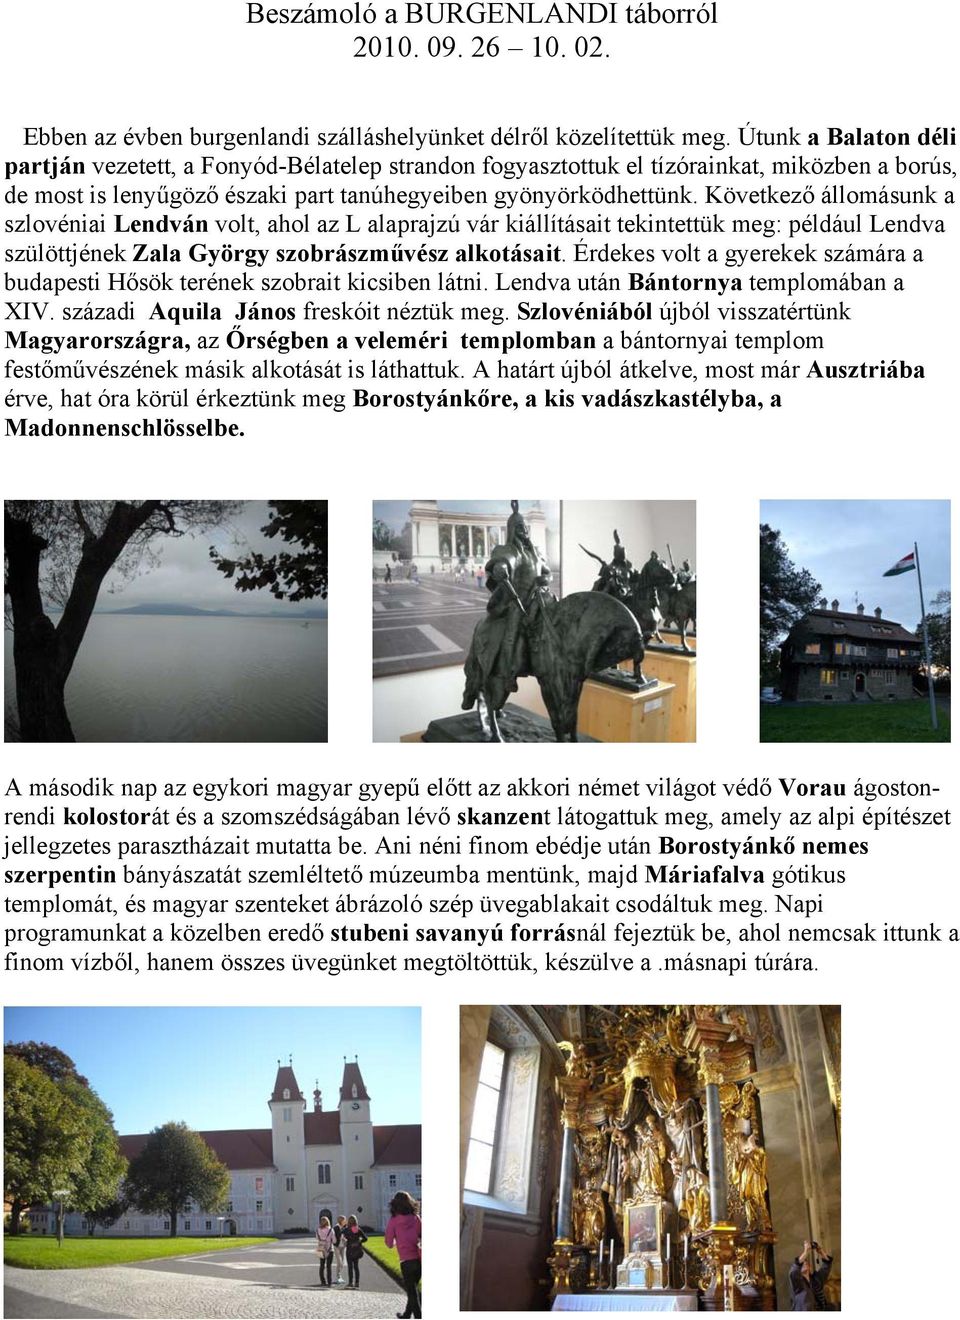 Következő állomásunk a szlovéniai Lendván volt, ahol az L alaprajzú vár kiállításait tekintettük meg: például Lendva szülöttjének Zala György szobrászművész alkotásait.